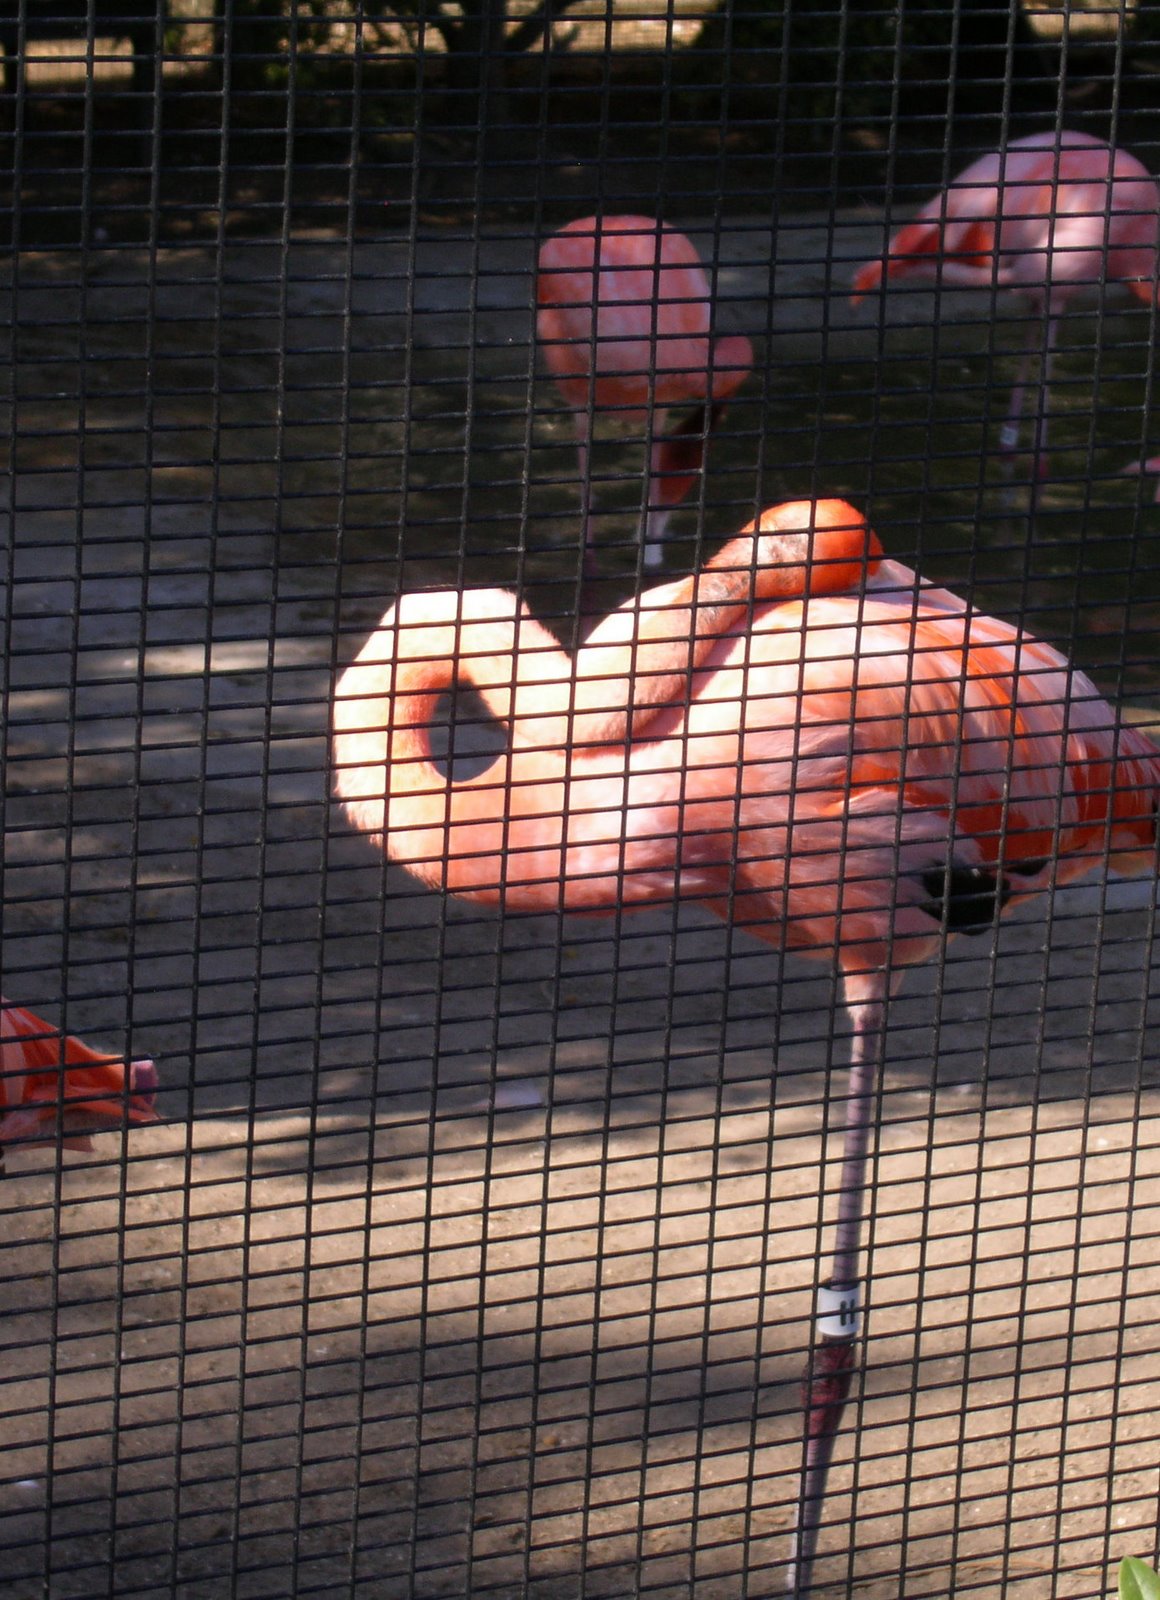 [flamingoparade.jpg]